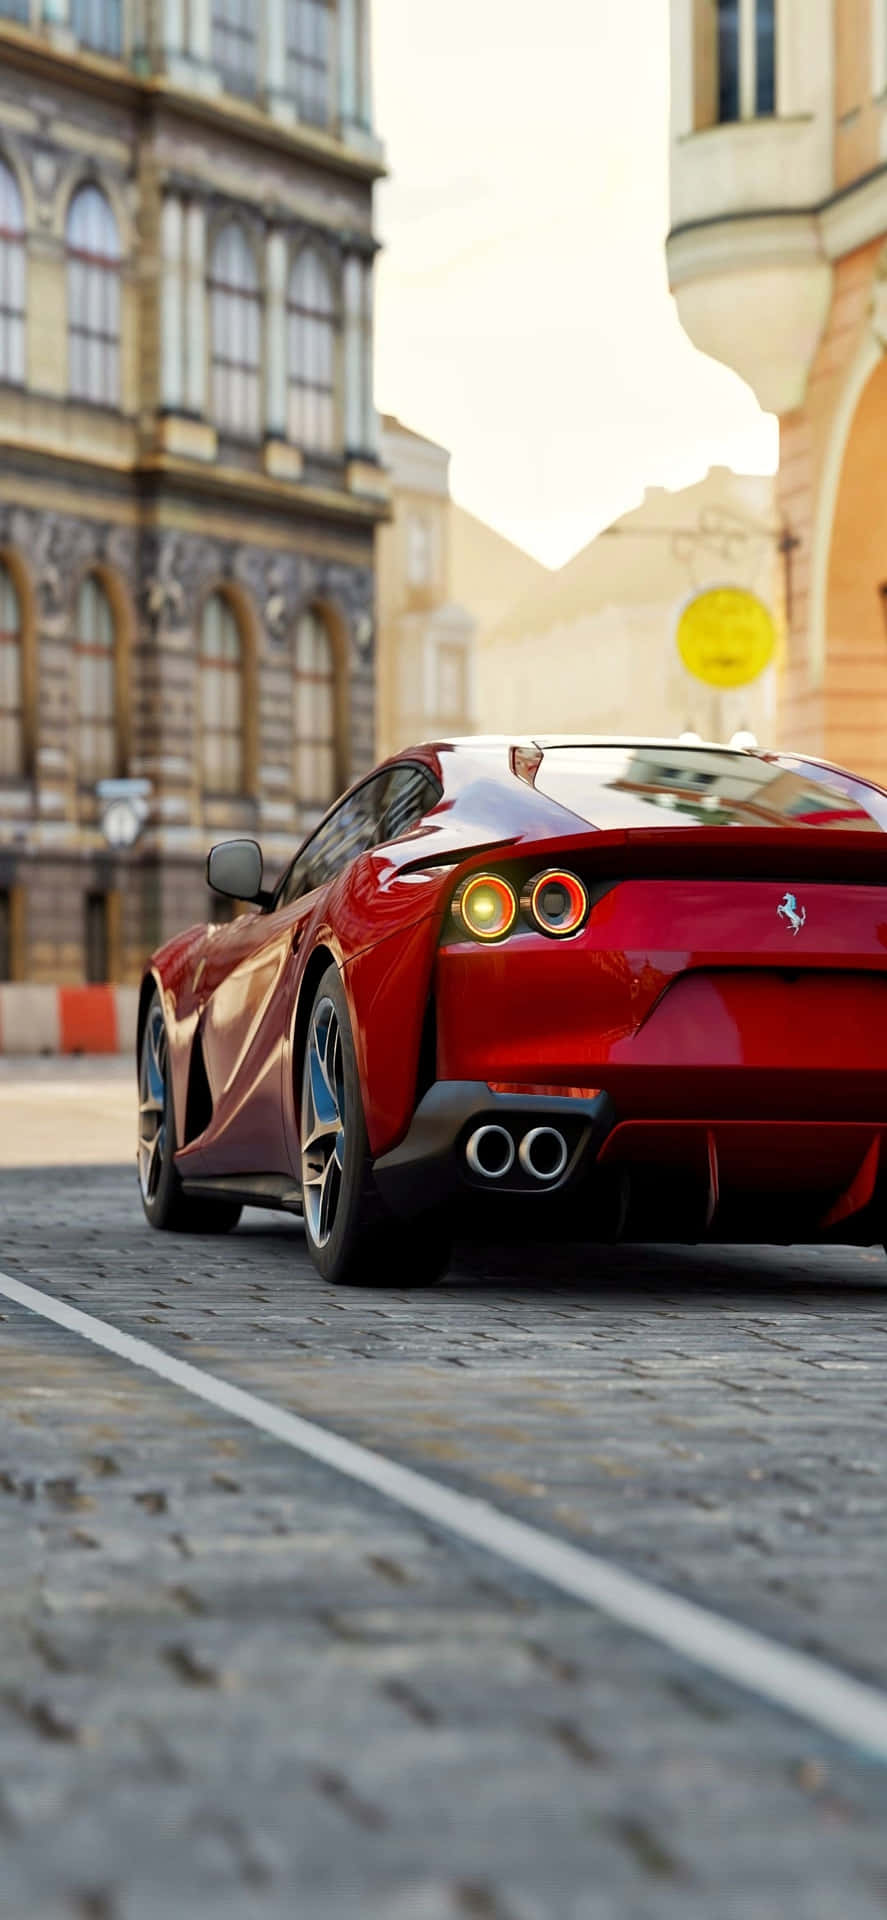 Iphone Xs Max Ferrari-baggrund Rød Ferrari 812 Superfast